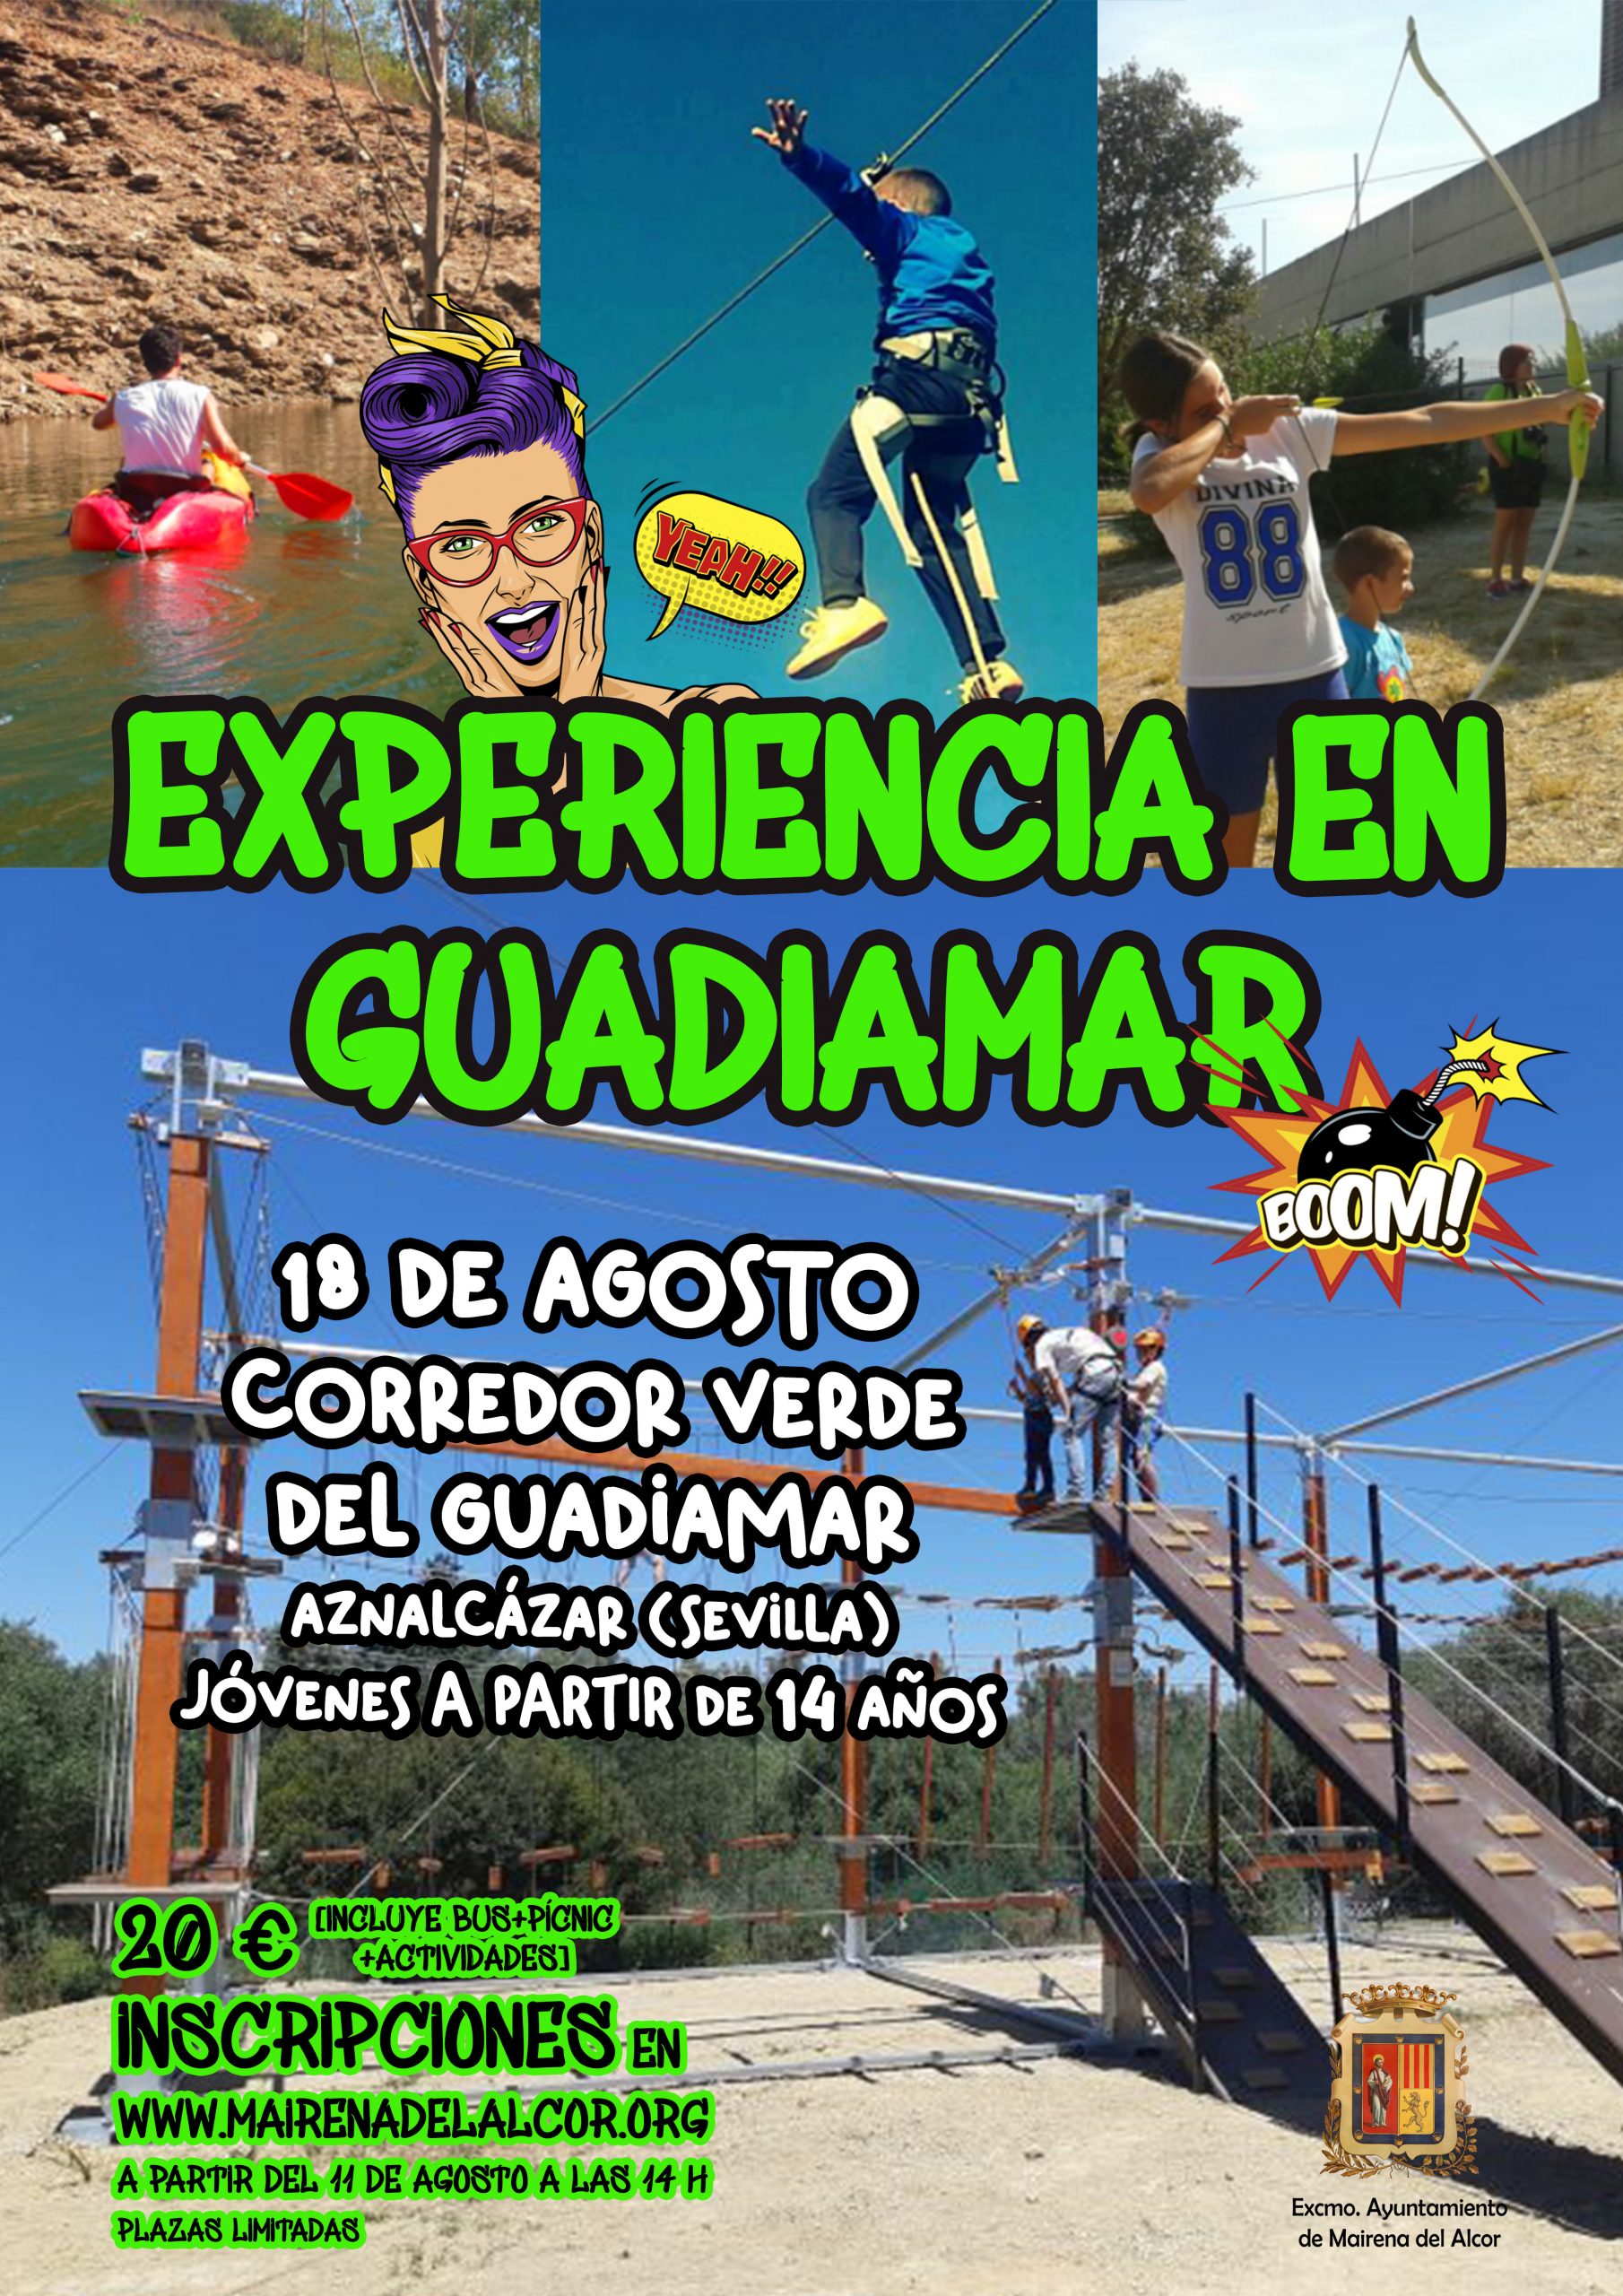 Los jóvenes de Mairena del Alcor disfrutarán de una "Experiencia en Guadiamar"